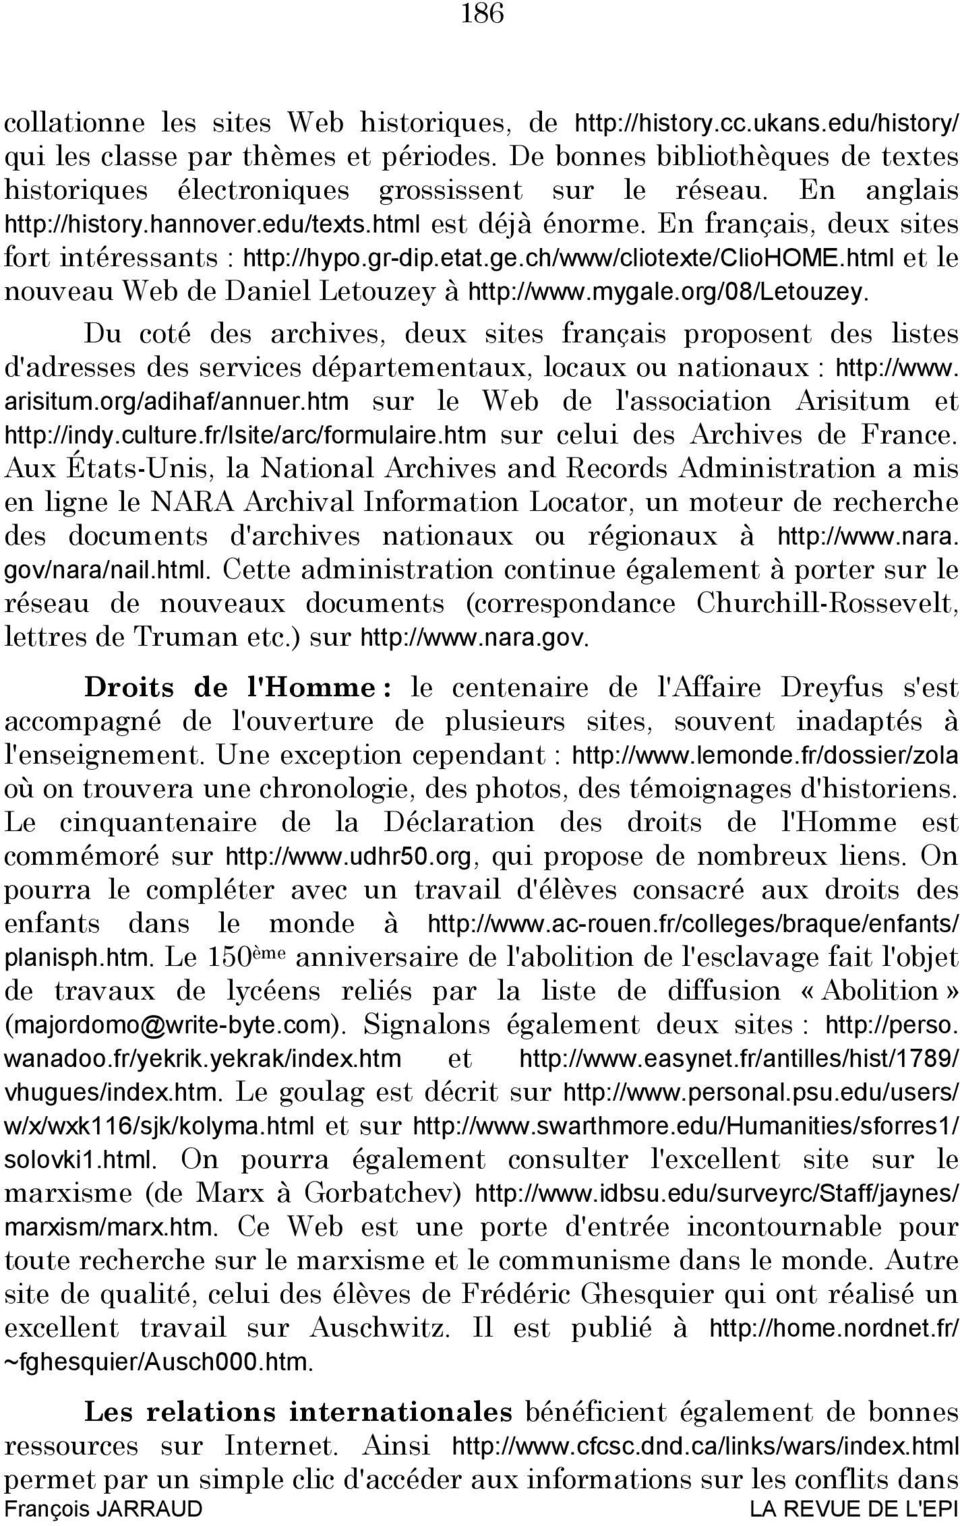 En français, deux sites fort intéressants : http://hypo.gr-dip.etat.ge.ch/www/cliotexte/cliohome.html et le nouveau Web de Daniel Letouzey à http://www.mygale.org/08/letouzey.